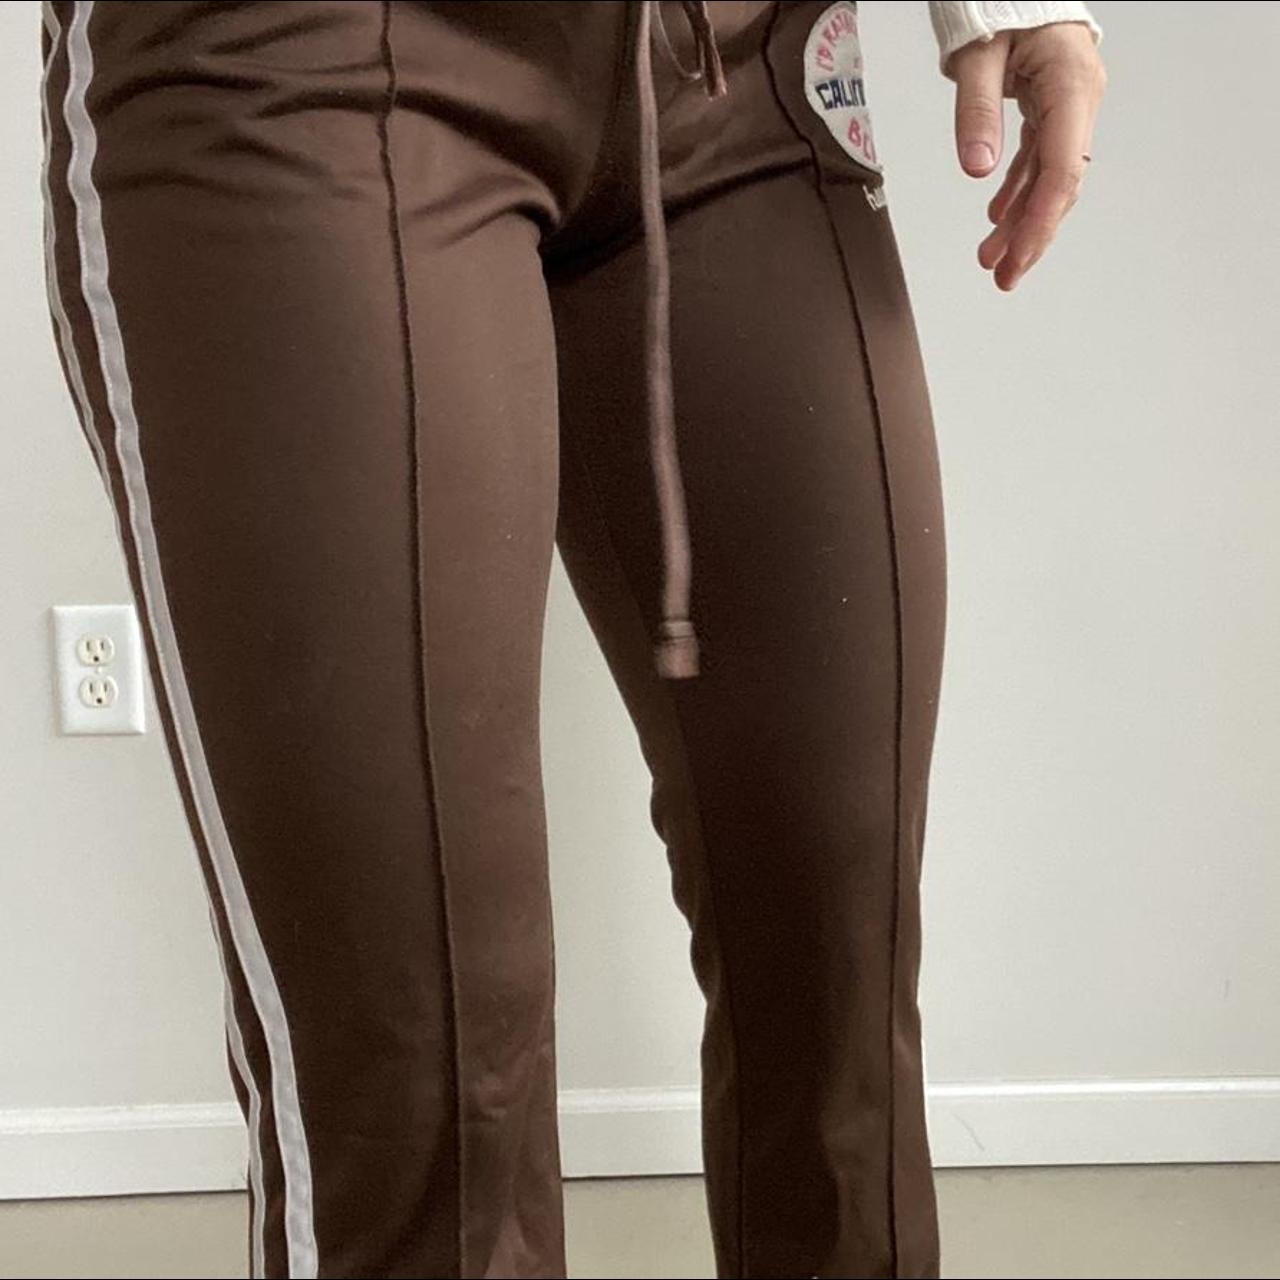 2000s Gilly Hicks gray fold over yoga pants - Depop